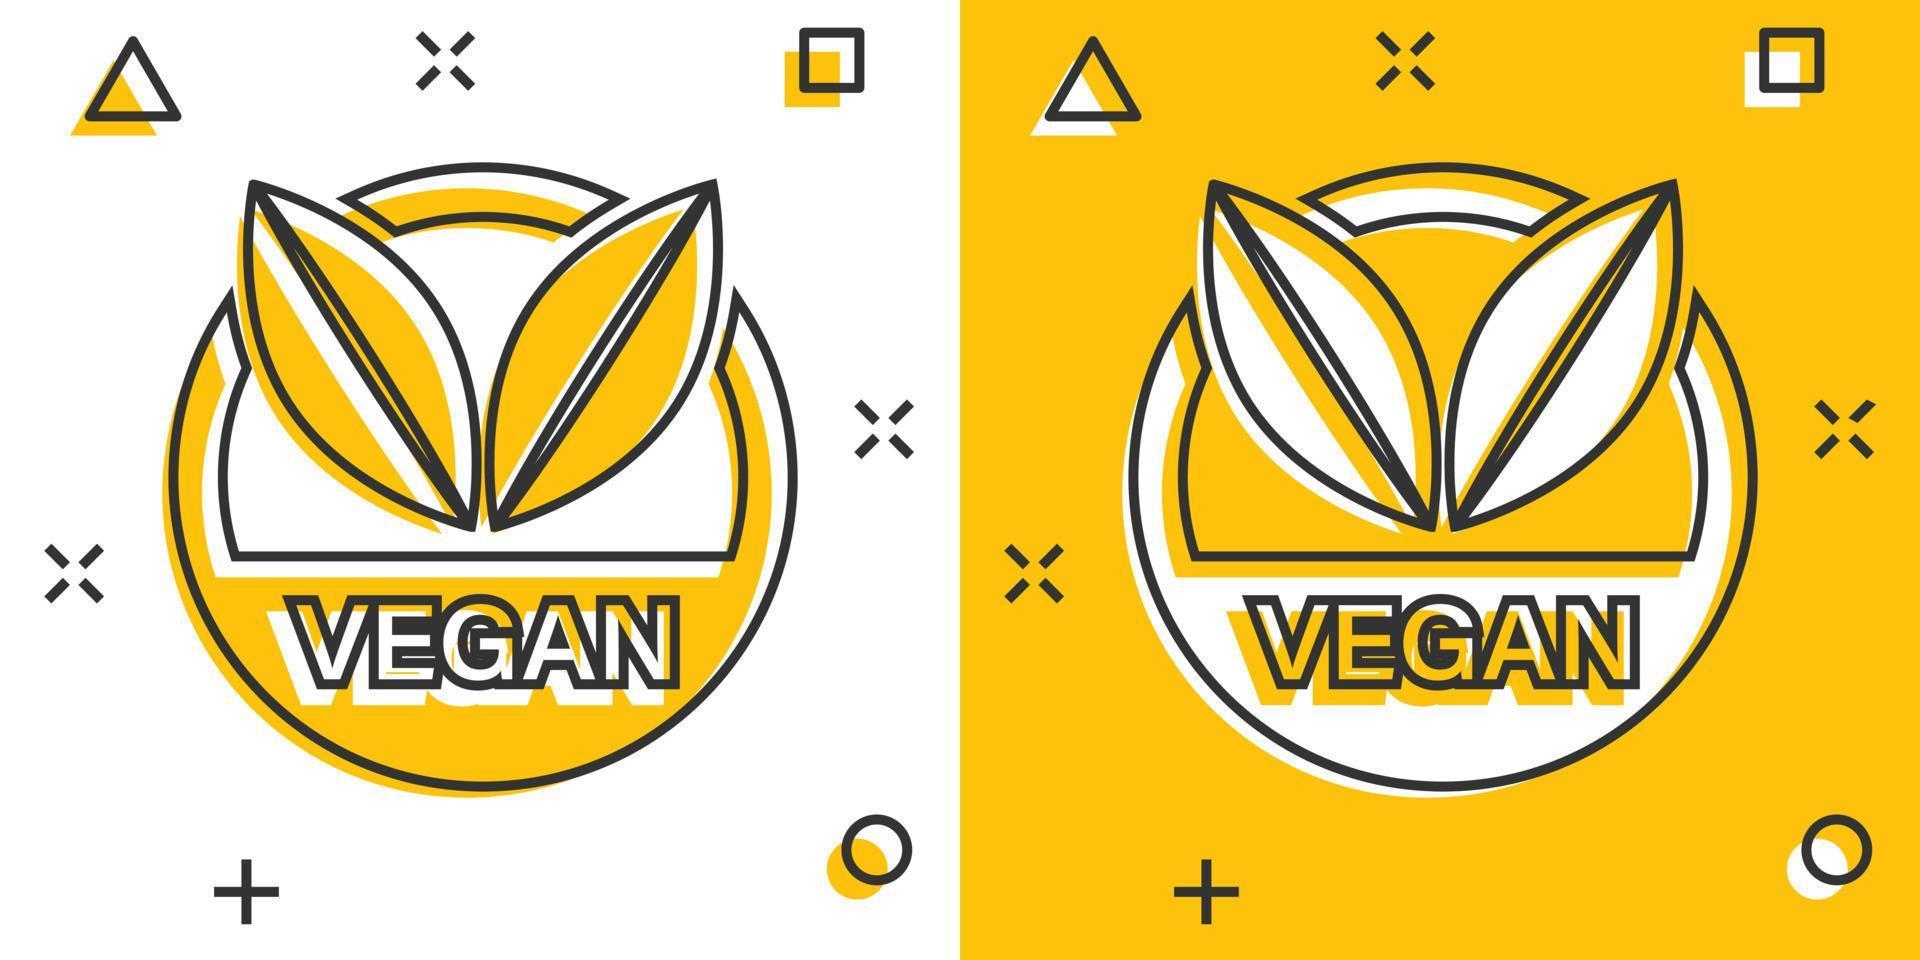 icône d'insigne d'étiquette végétalienne de dessin animé de vecteur dans le style comique. pictogramme d'illustration de concept de timbre végétarien. concept d'effet d'éclaboussure d'entreprise d'aliments naturels éco.